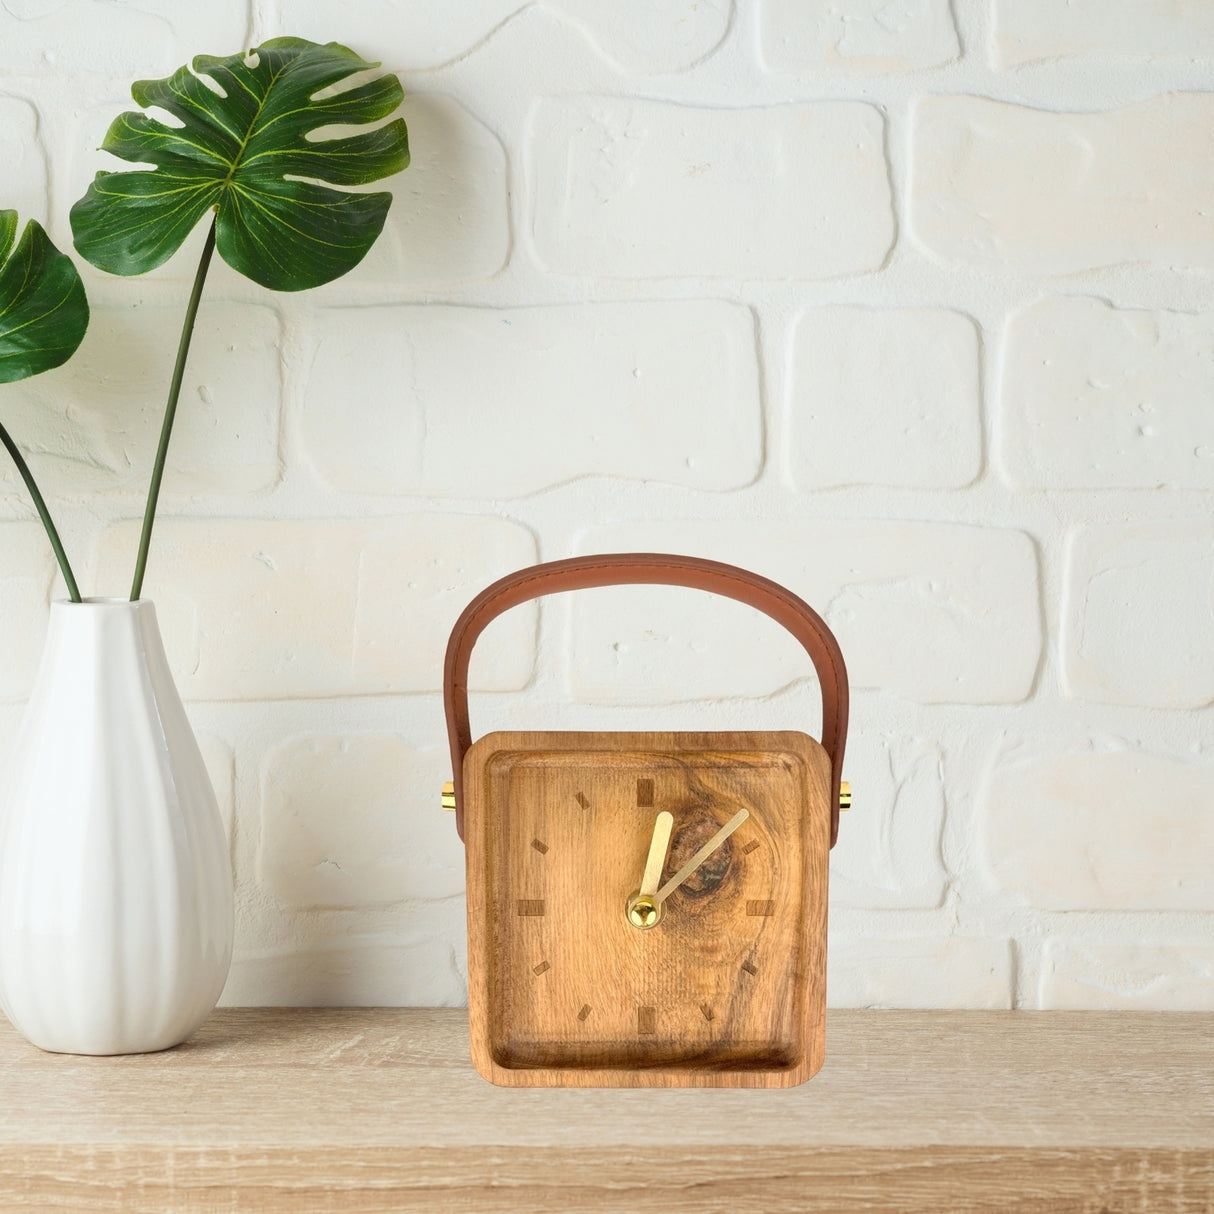 Holz Uhr mit Kunstleder-Gurt und 11cm Höhe